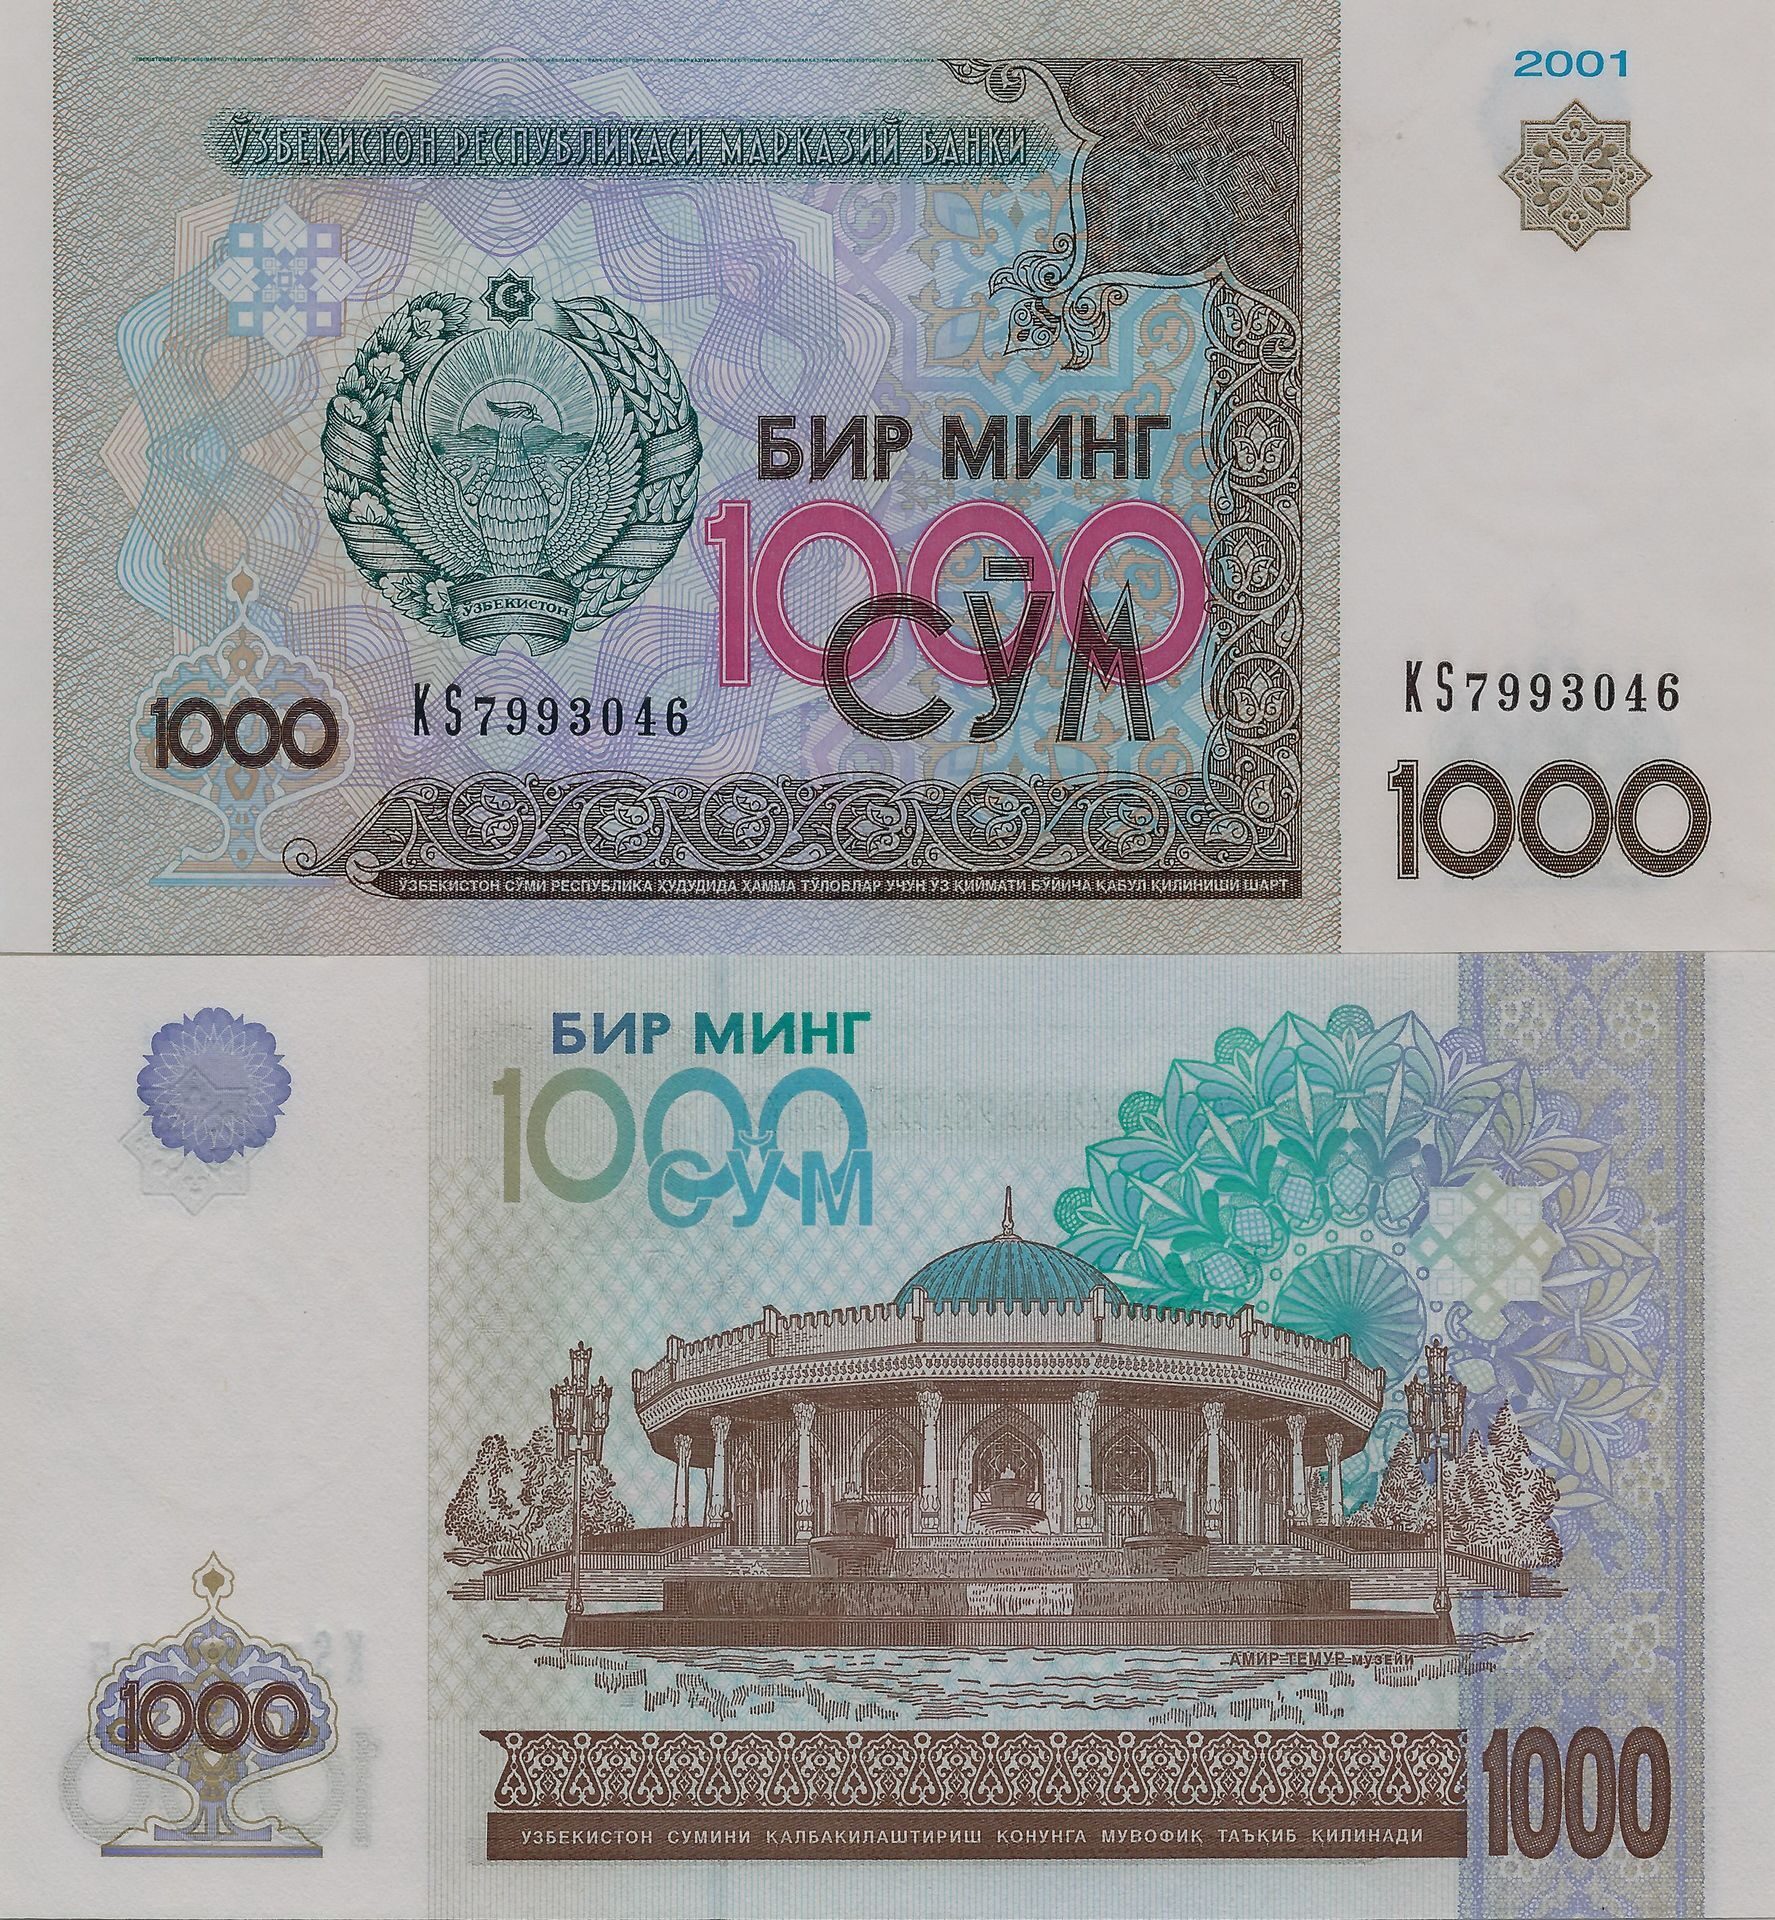 60 рублей в узбекских. Узбекистан 1000 сум 2001 года. 1000 Сум купюра. 1000 Сум в рублях. Деньги копюрыв 2001 году.